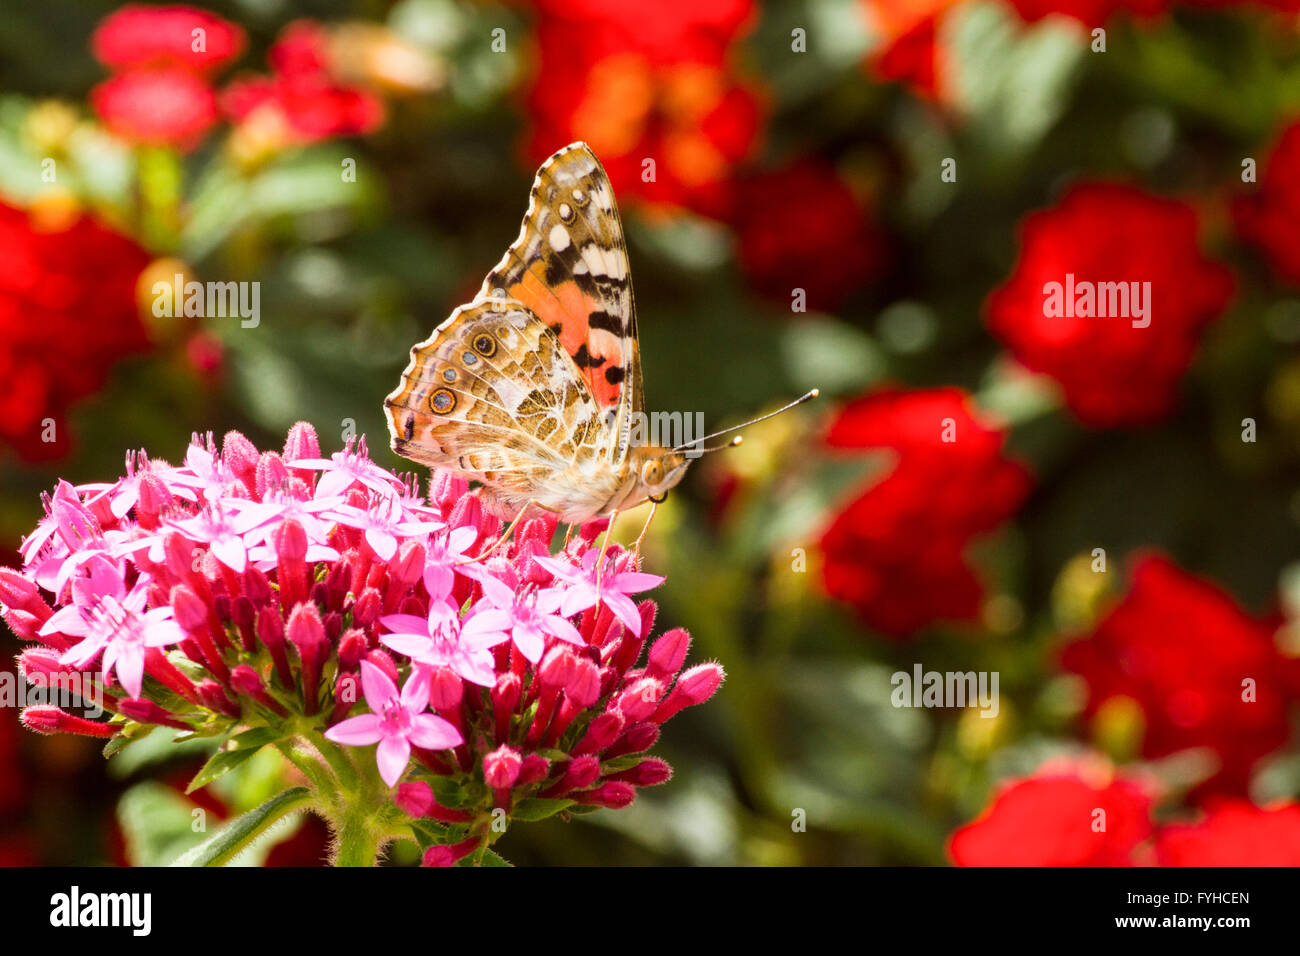 La belle dame (Vanessa cardui) Ce papillon se trouve en Europe, en Afrique du nord, et en Asie occidentale. Photographié en Israël, Wint Banque D'Images